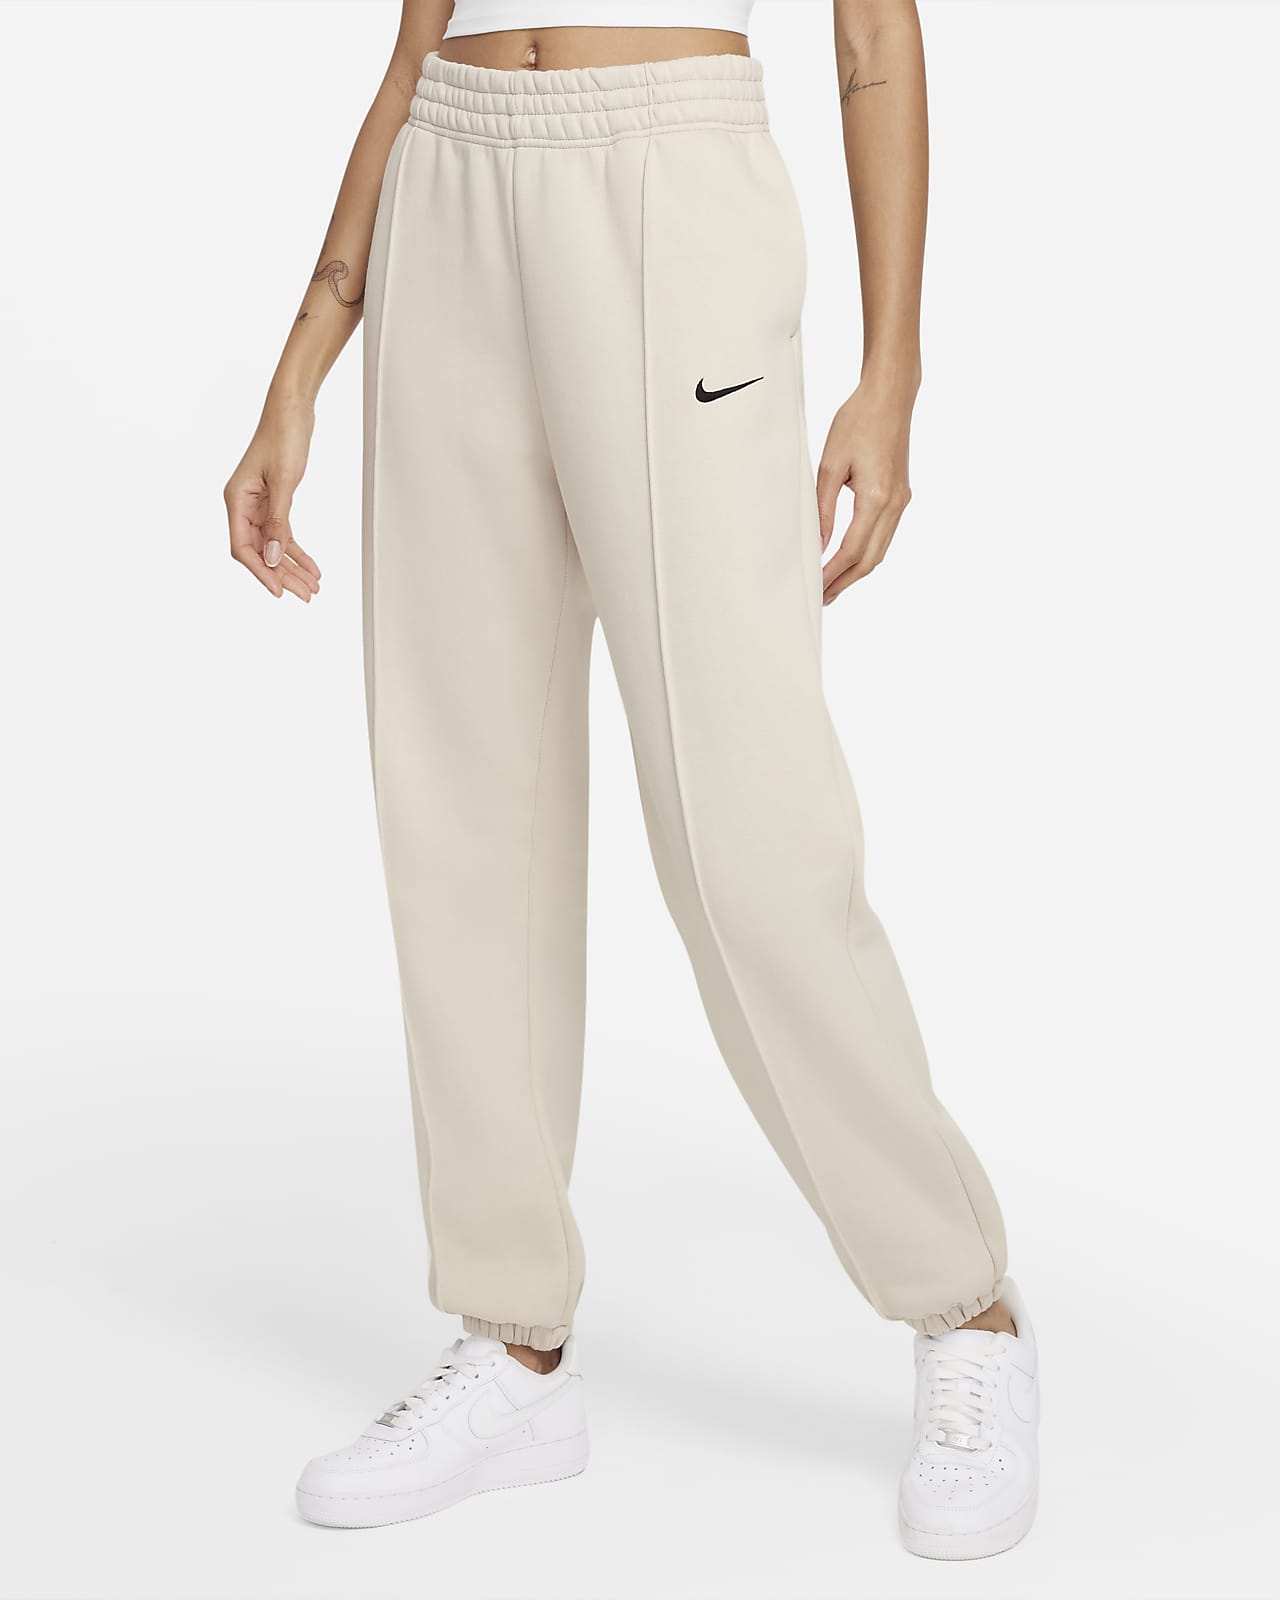 Pantalon Nike Sportswear Collection Essentials pour Femme